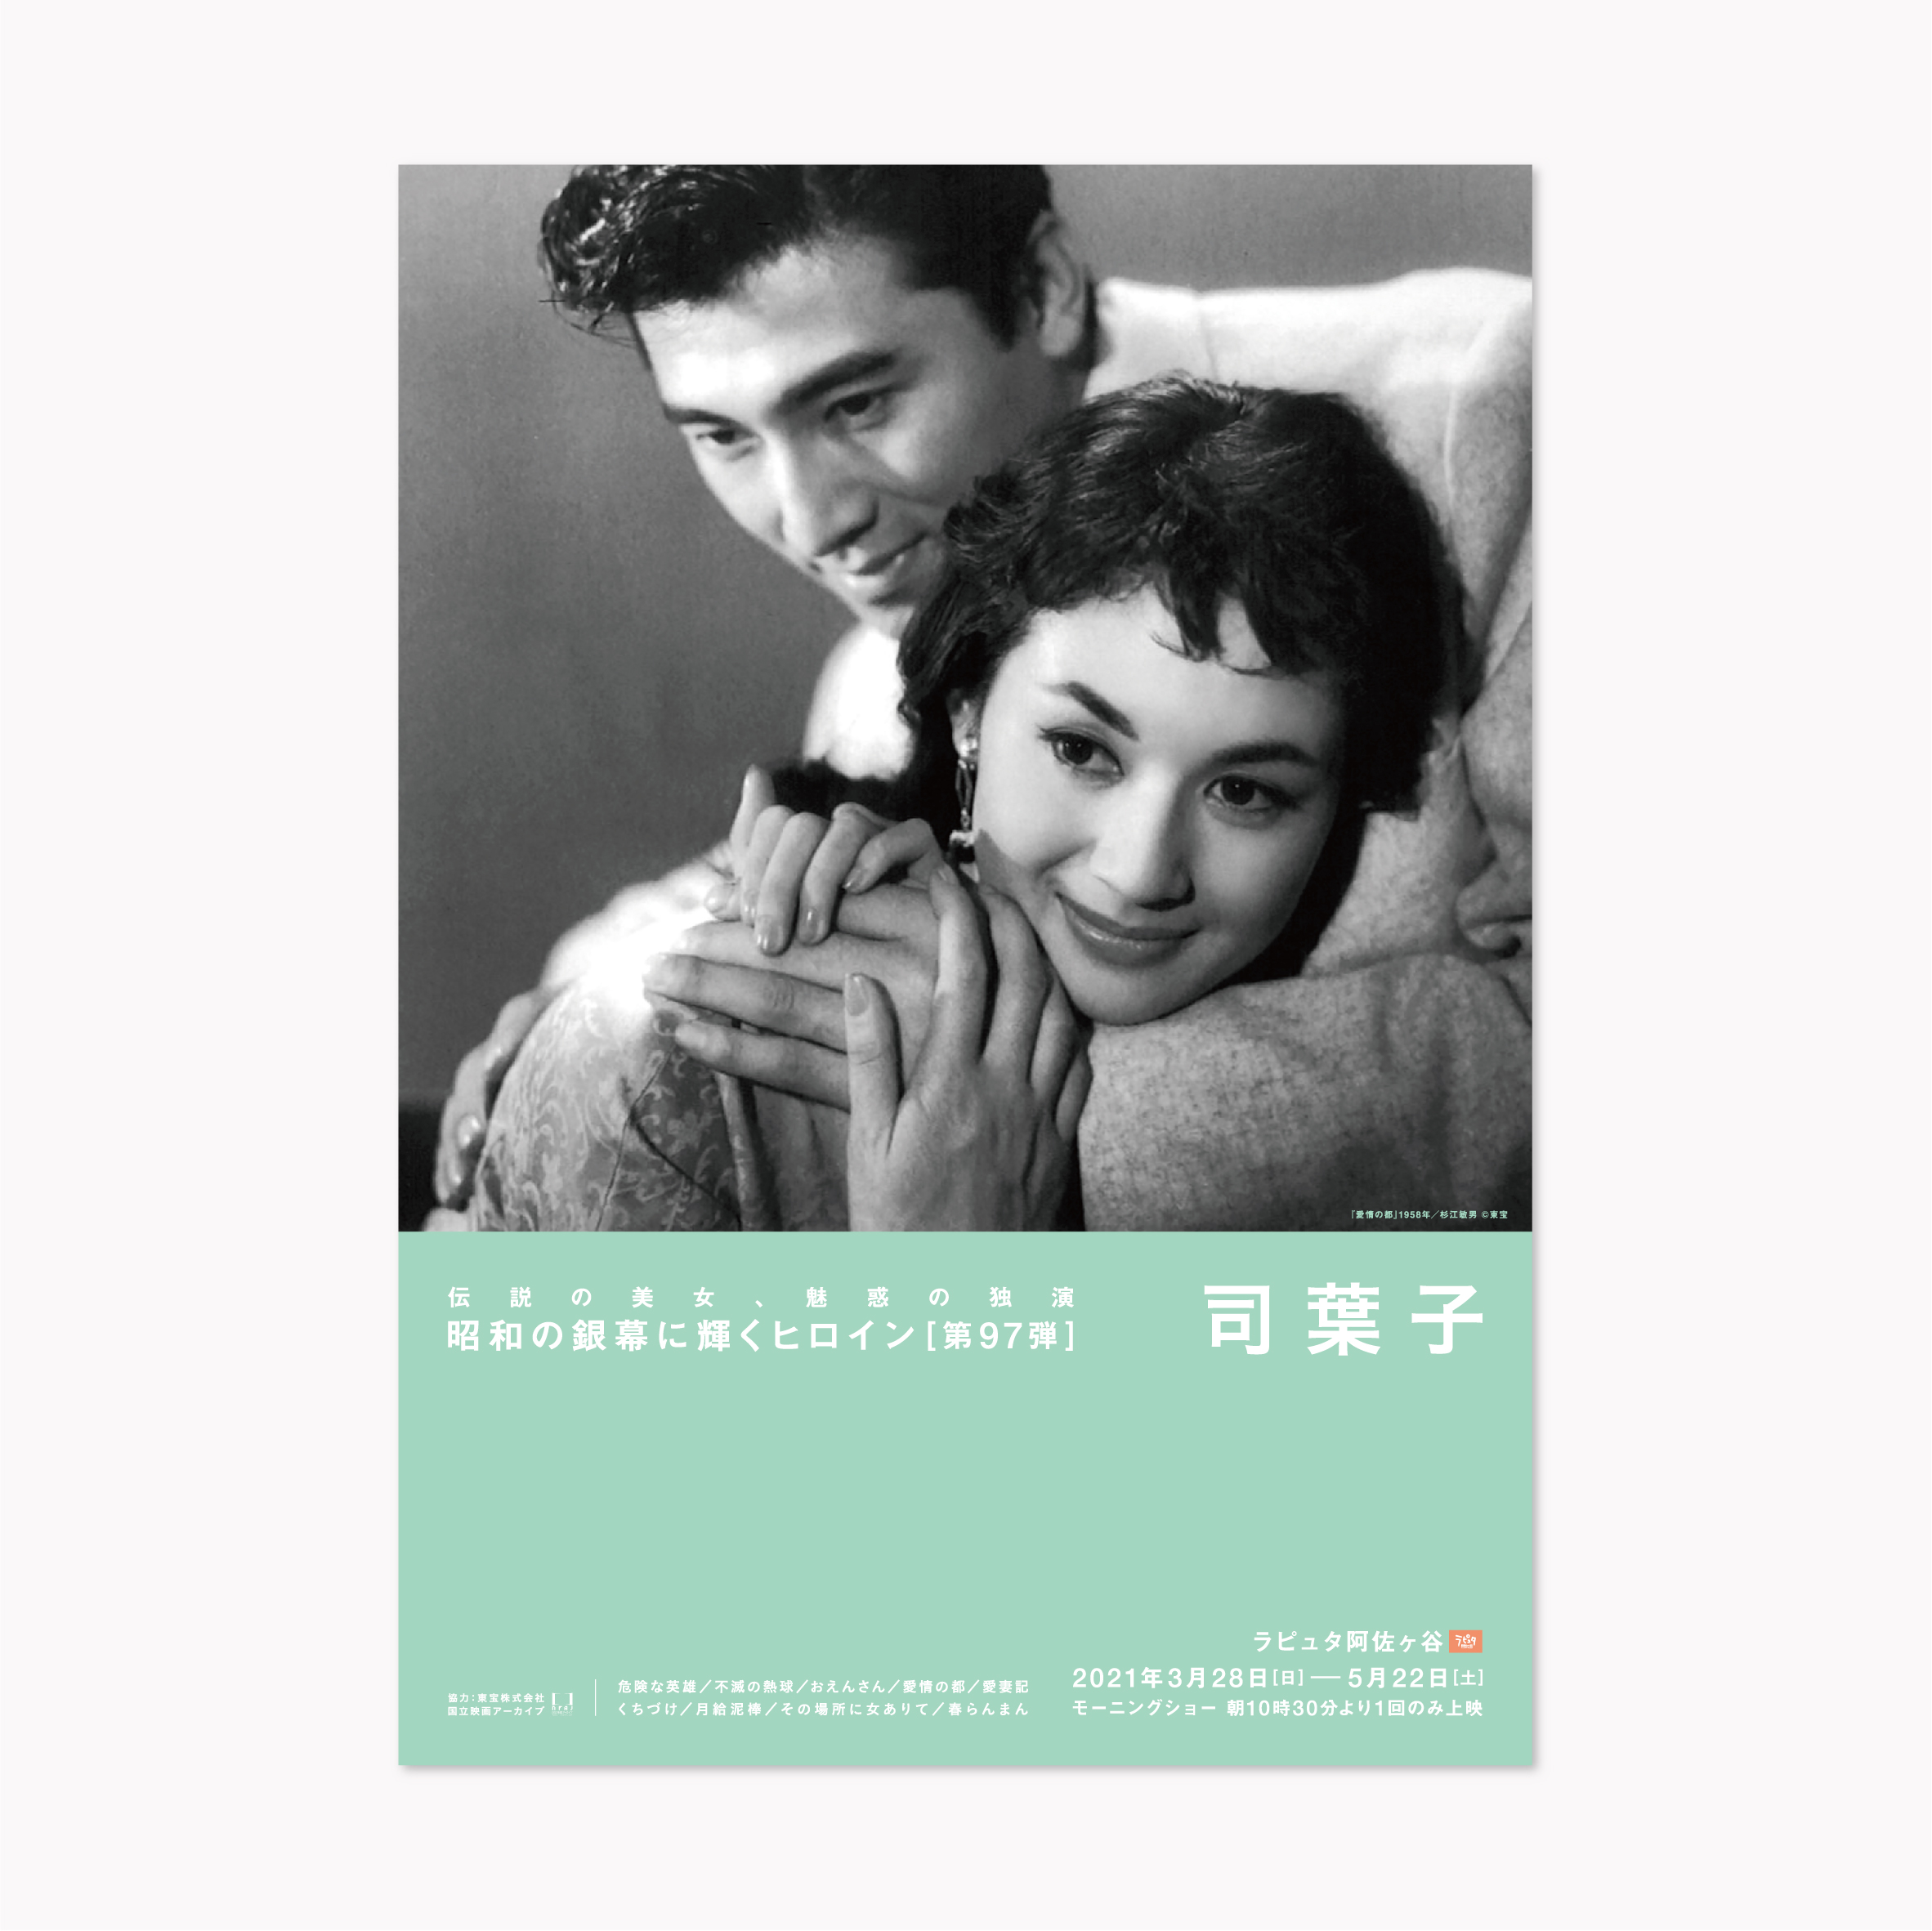 昭和の銀幕に輝くヒロイン[第97弾]司葉子 | Ayaka Nakazawa